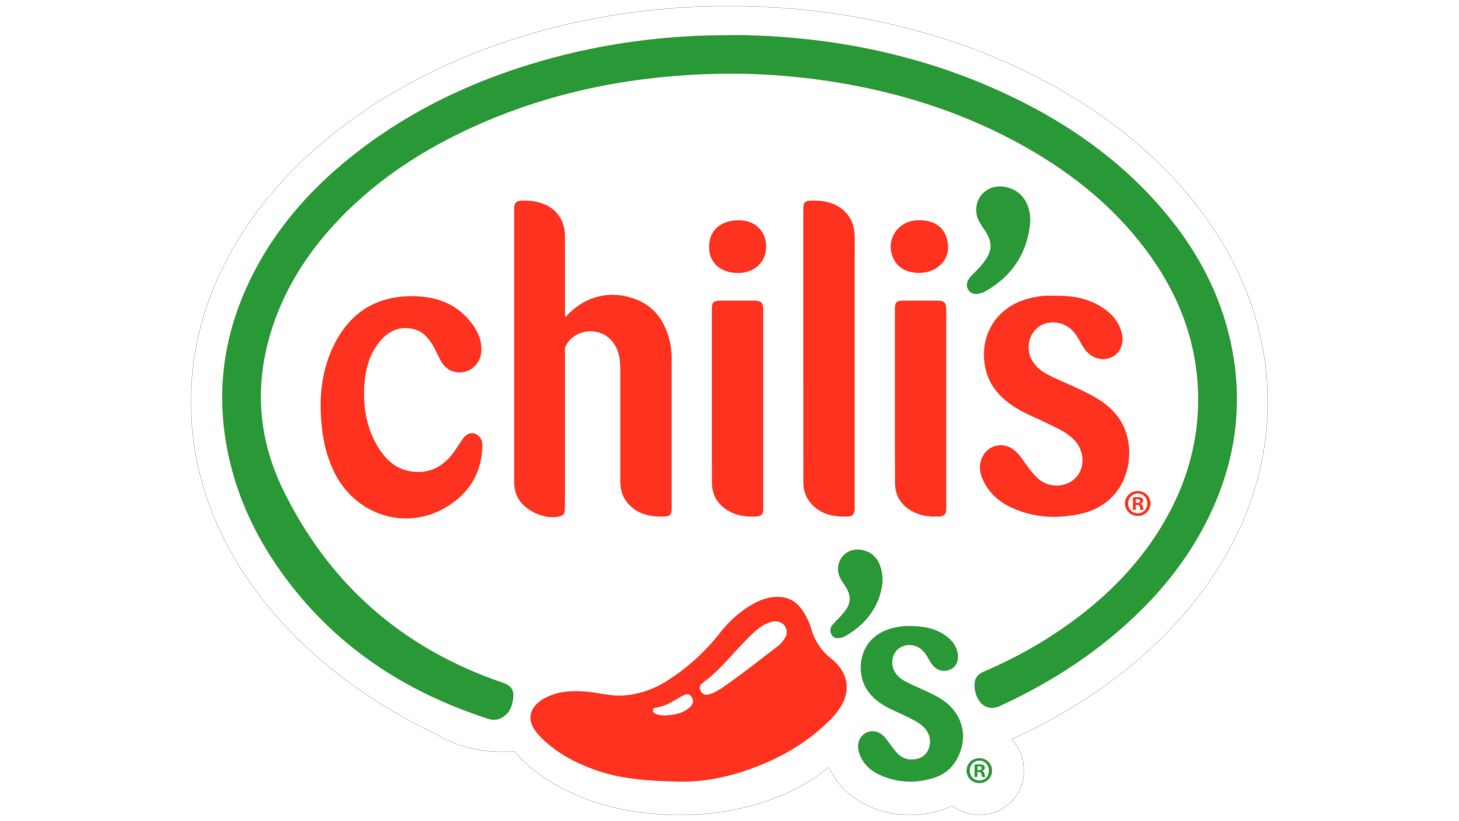 Chilis symbol